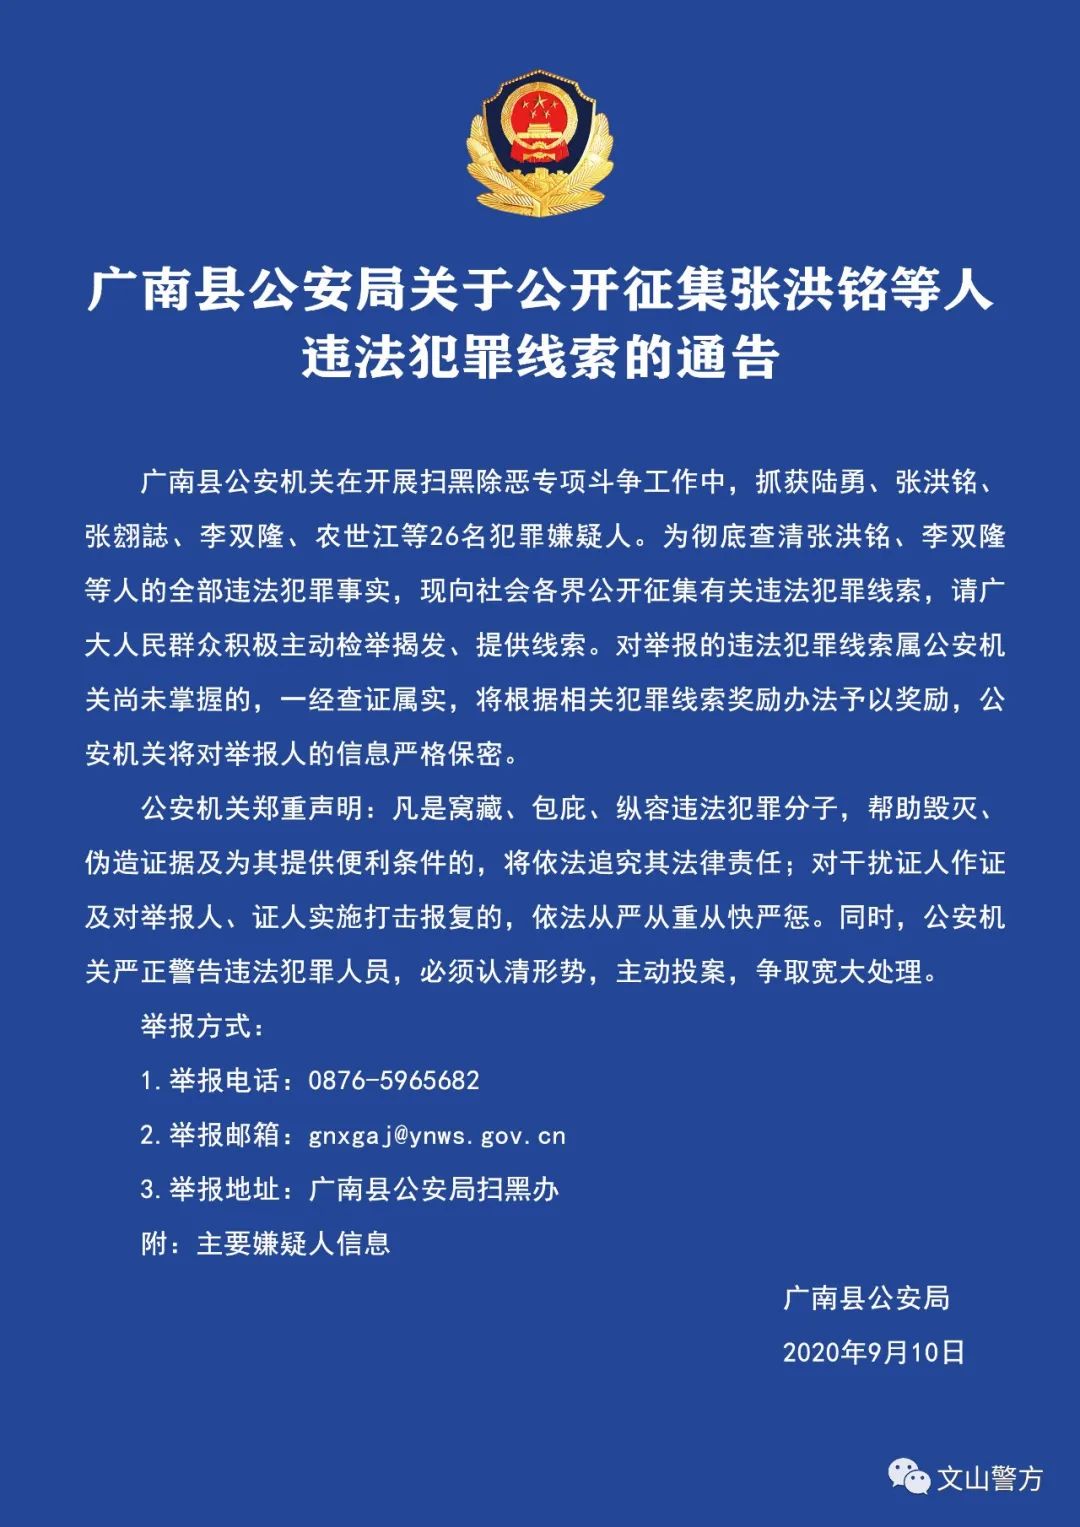 广南县公安局关于公开征集张洪铭等人违法犯罪线索的通告